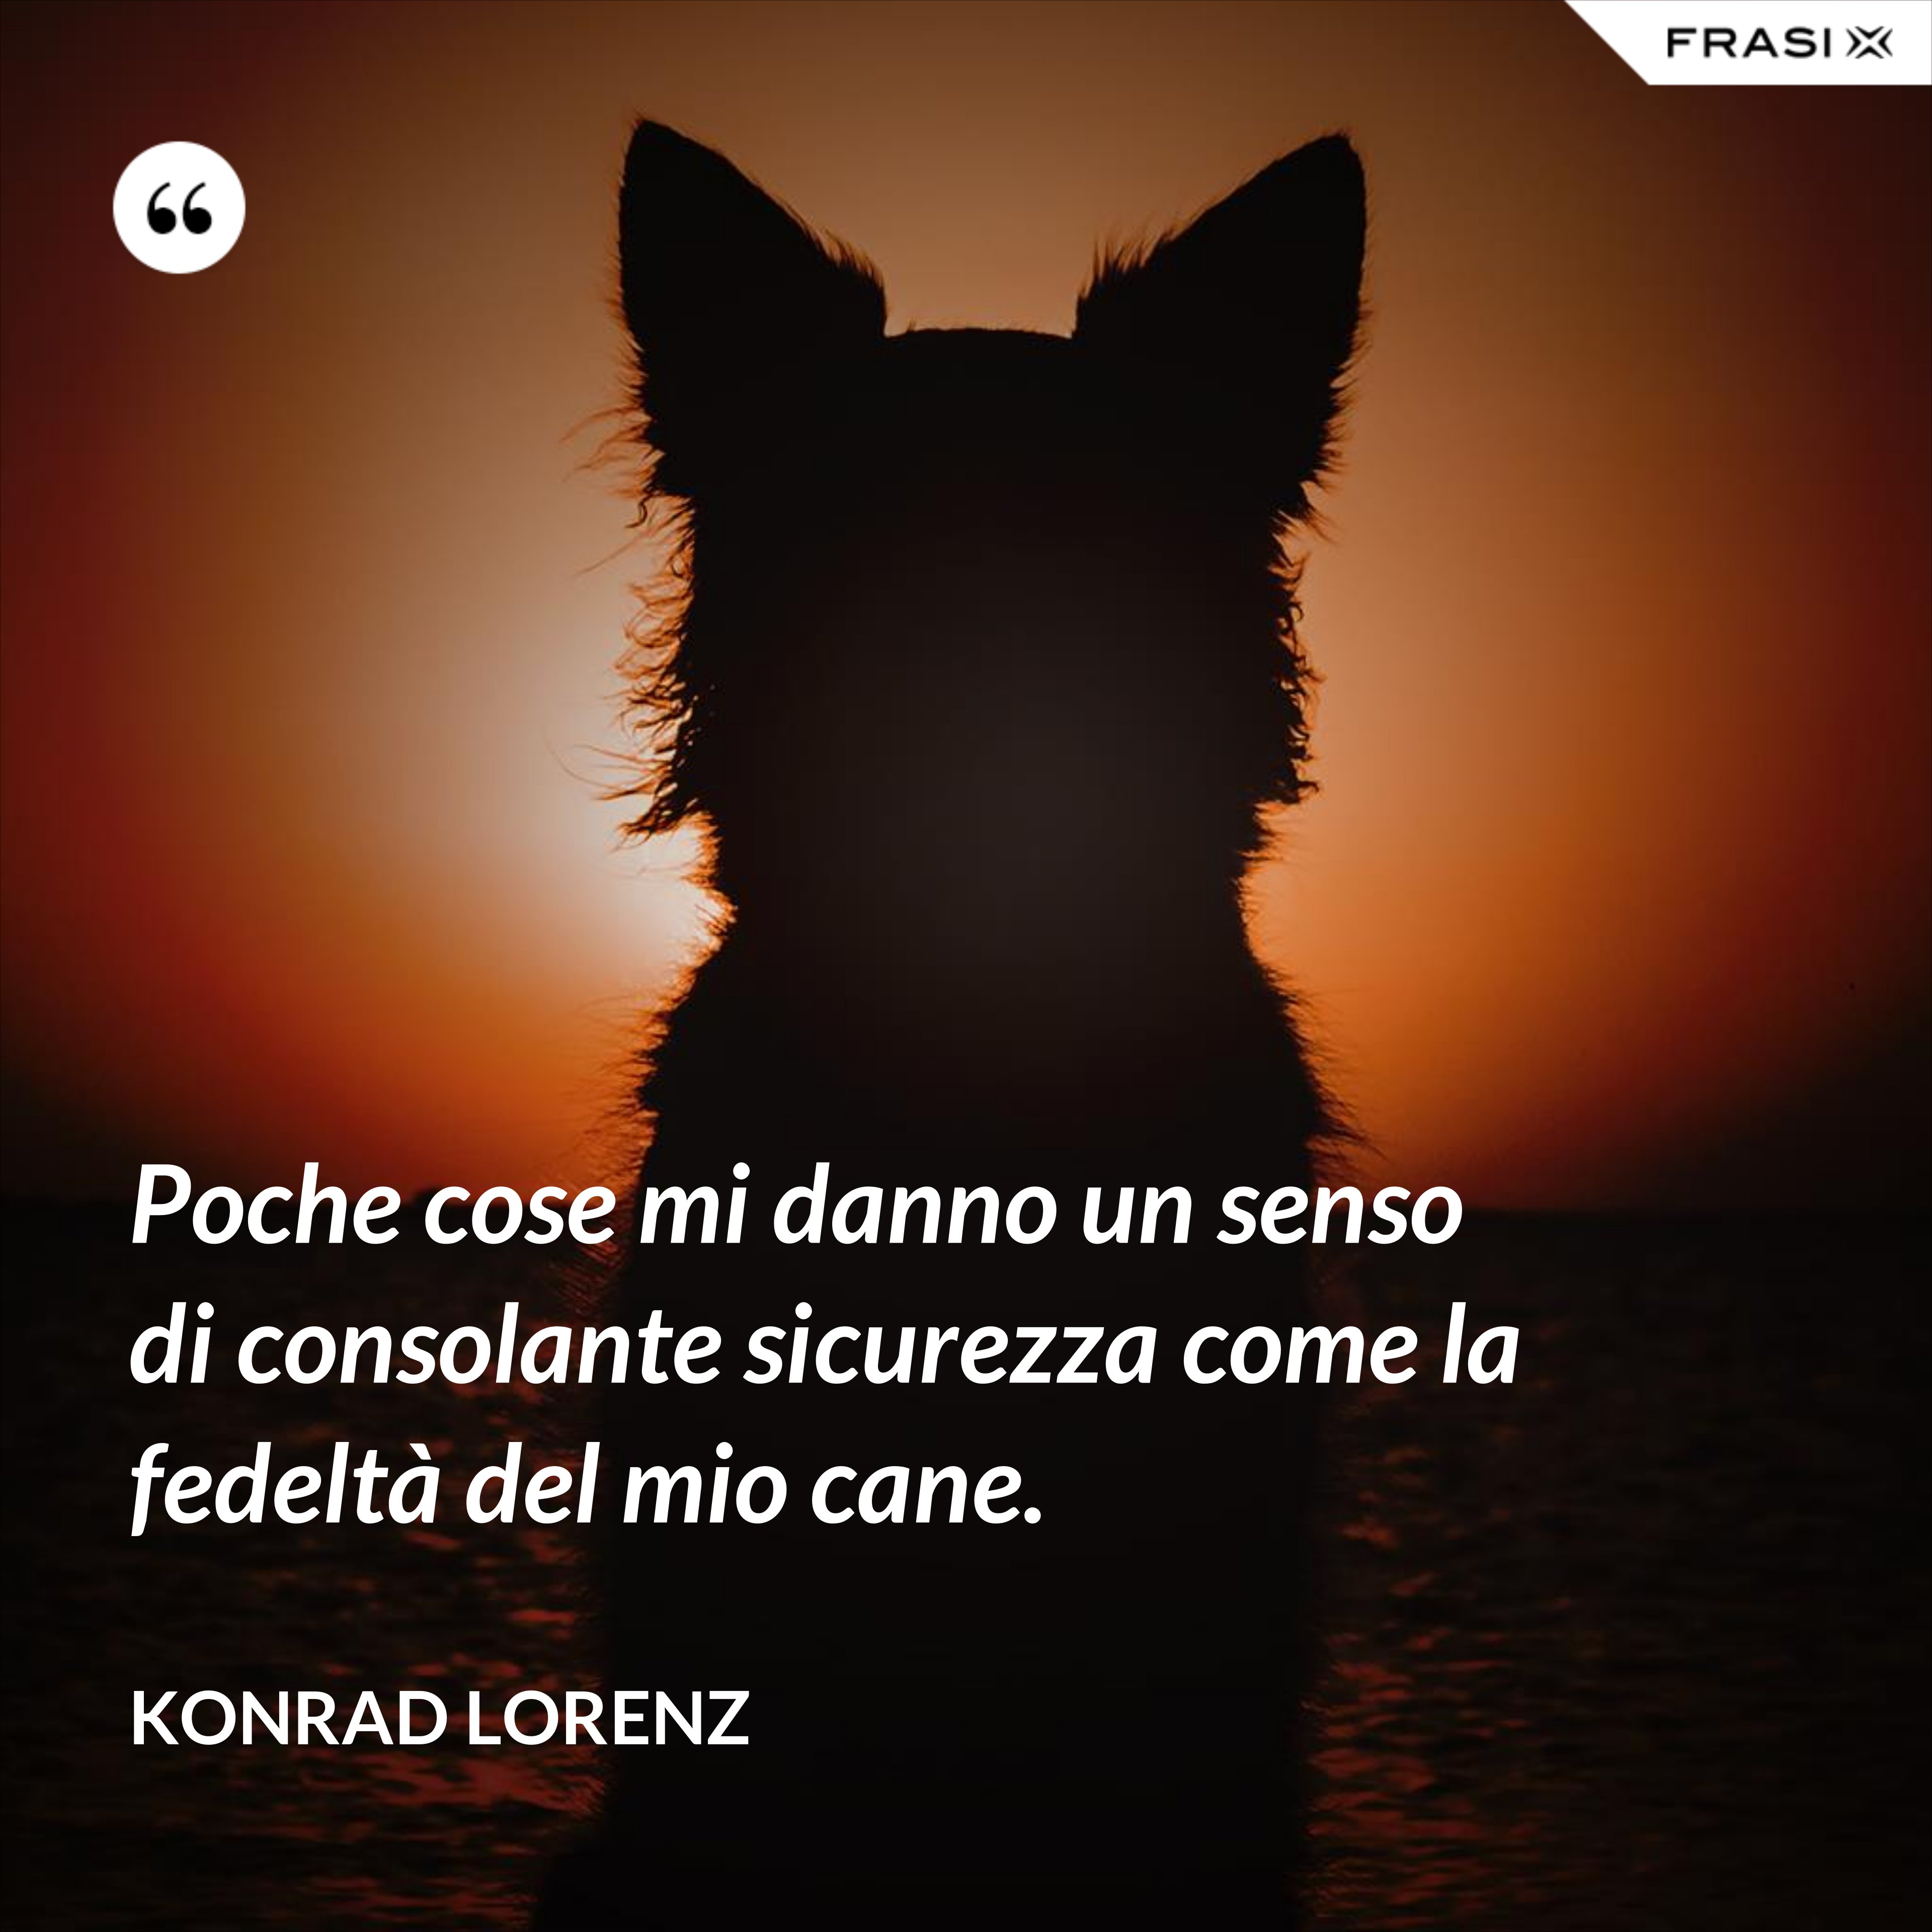 Poche cose mi danno un senso di consolante sicurezza come la fedeltà del mio cane. - Konrad Lorenz